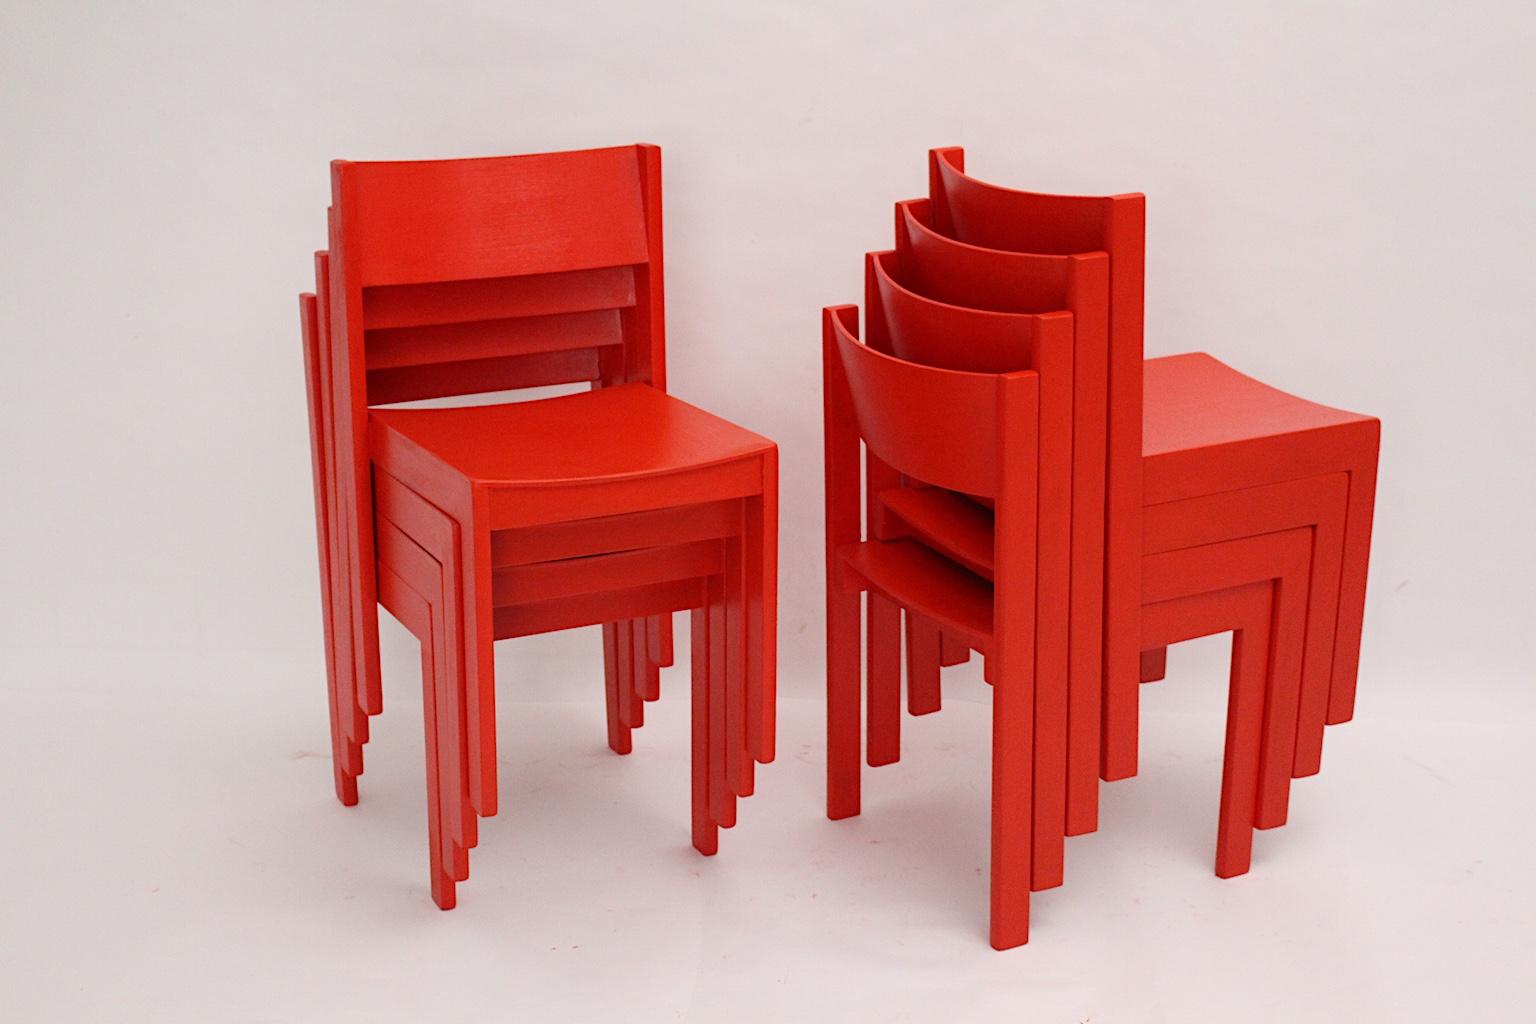 Mid-Century Modern Vintage Rotbuche Satz von 14 Esszimmerstühlen, die in Wien, 1950er Jahre entworfen und ausgeführt wurden.
Die stapelbaren Esszimmerstühle wurden aus massiver Buche und Sperrholz gefertigt, sind sorgfältig gereinigt und neu rot